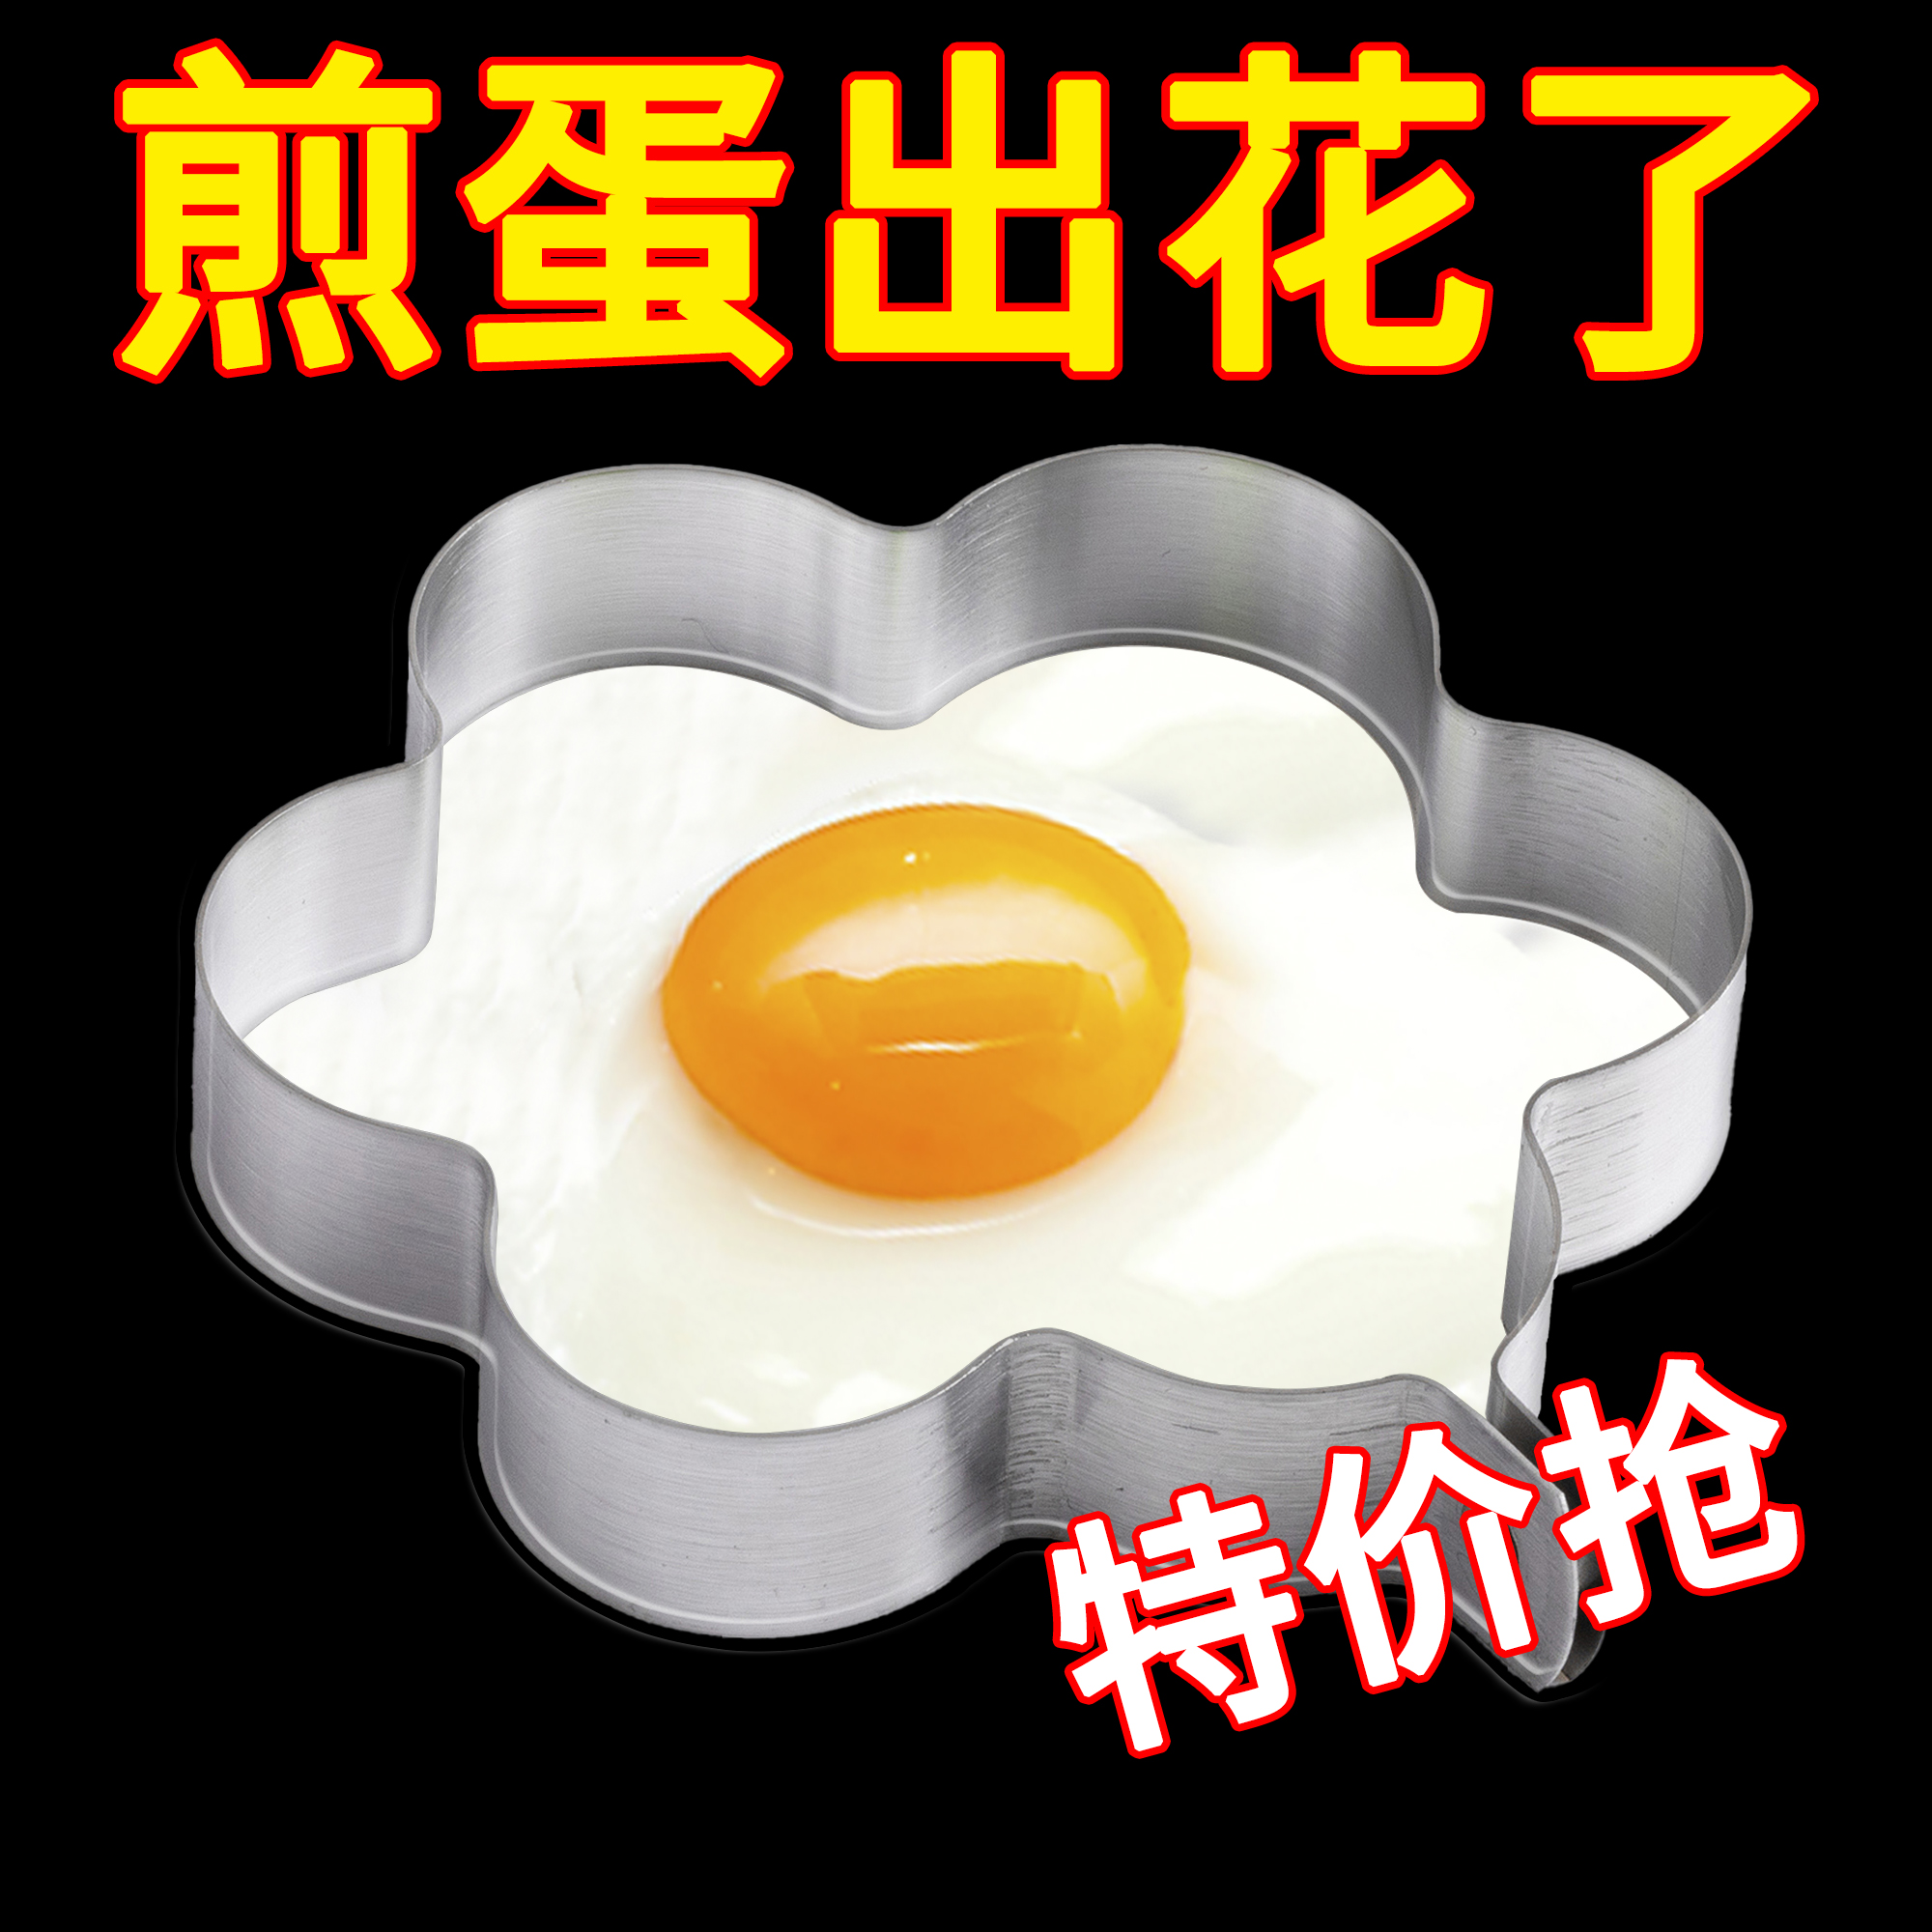 模型煎鸡蛋模具荷包蛋磨具爱心型创意煎蛋模具煎蛋圈不锈钢煎蛋器